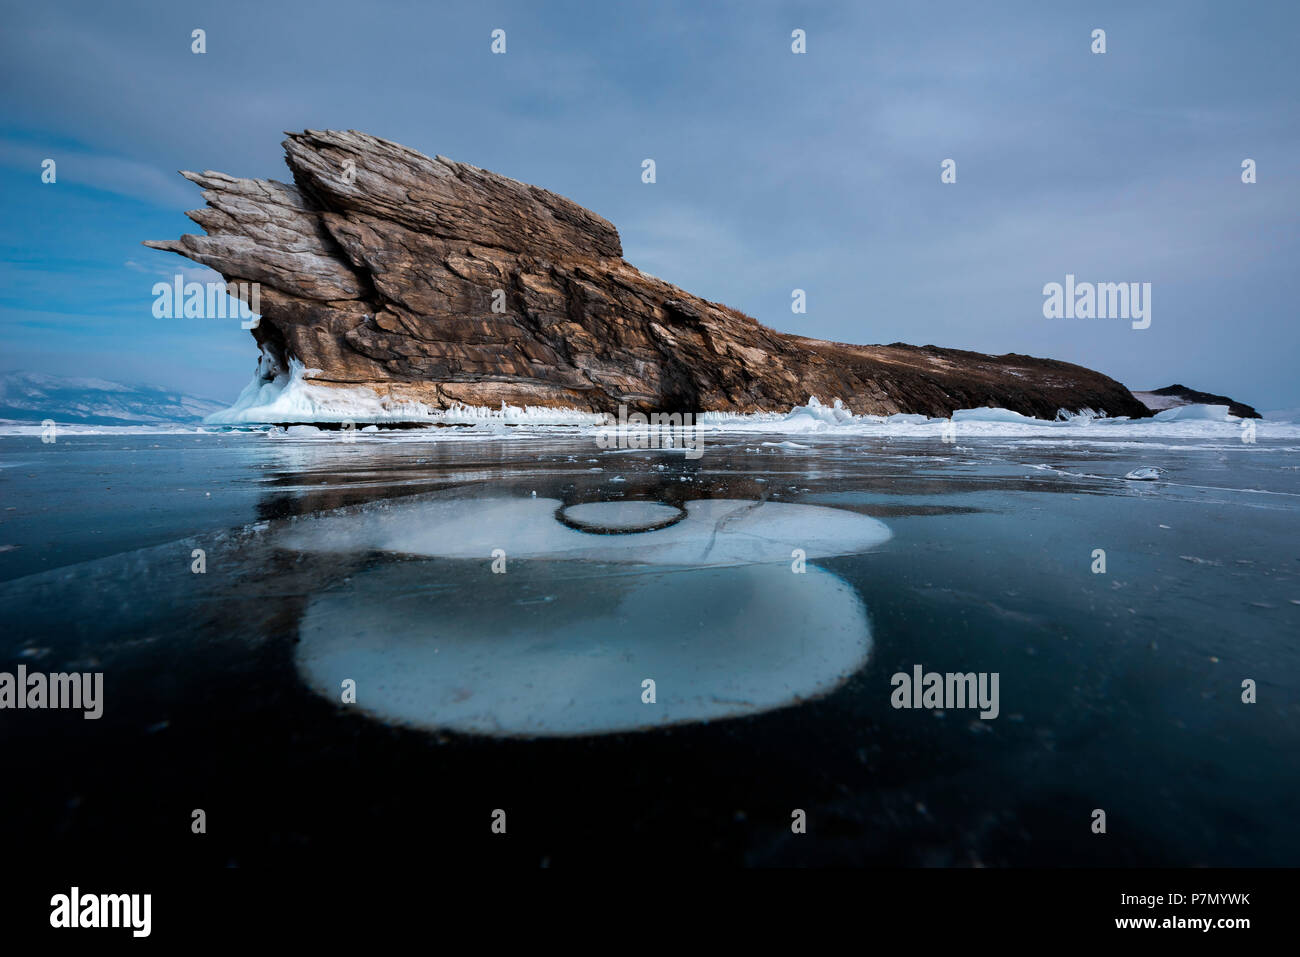 Eine besondere Form des Eises am Baikalsee, Irkutsk Region, Sibirien, Russland Stockfoto